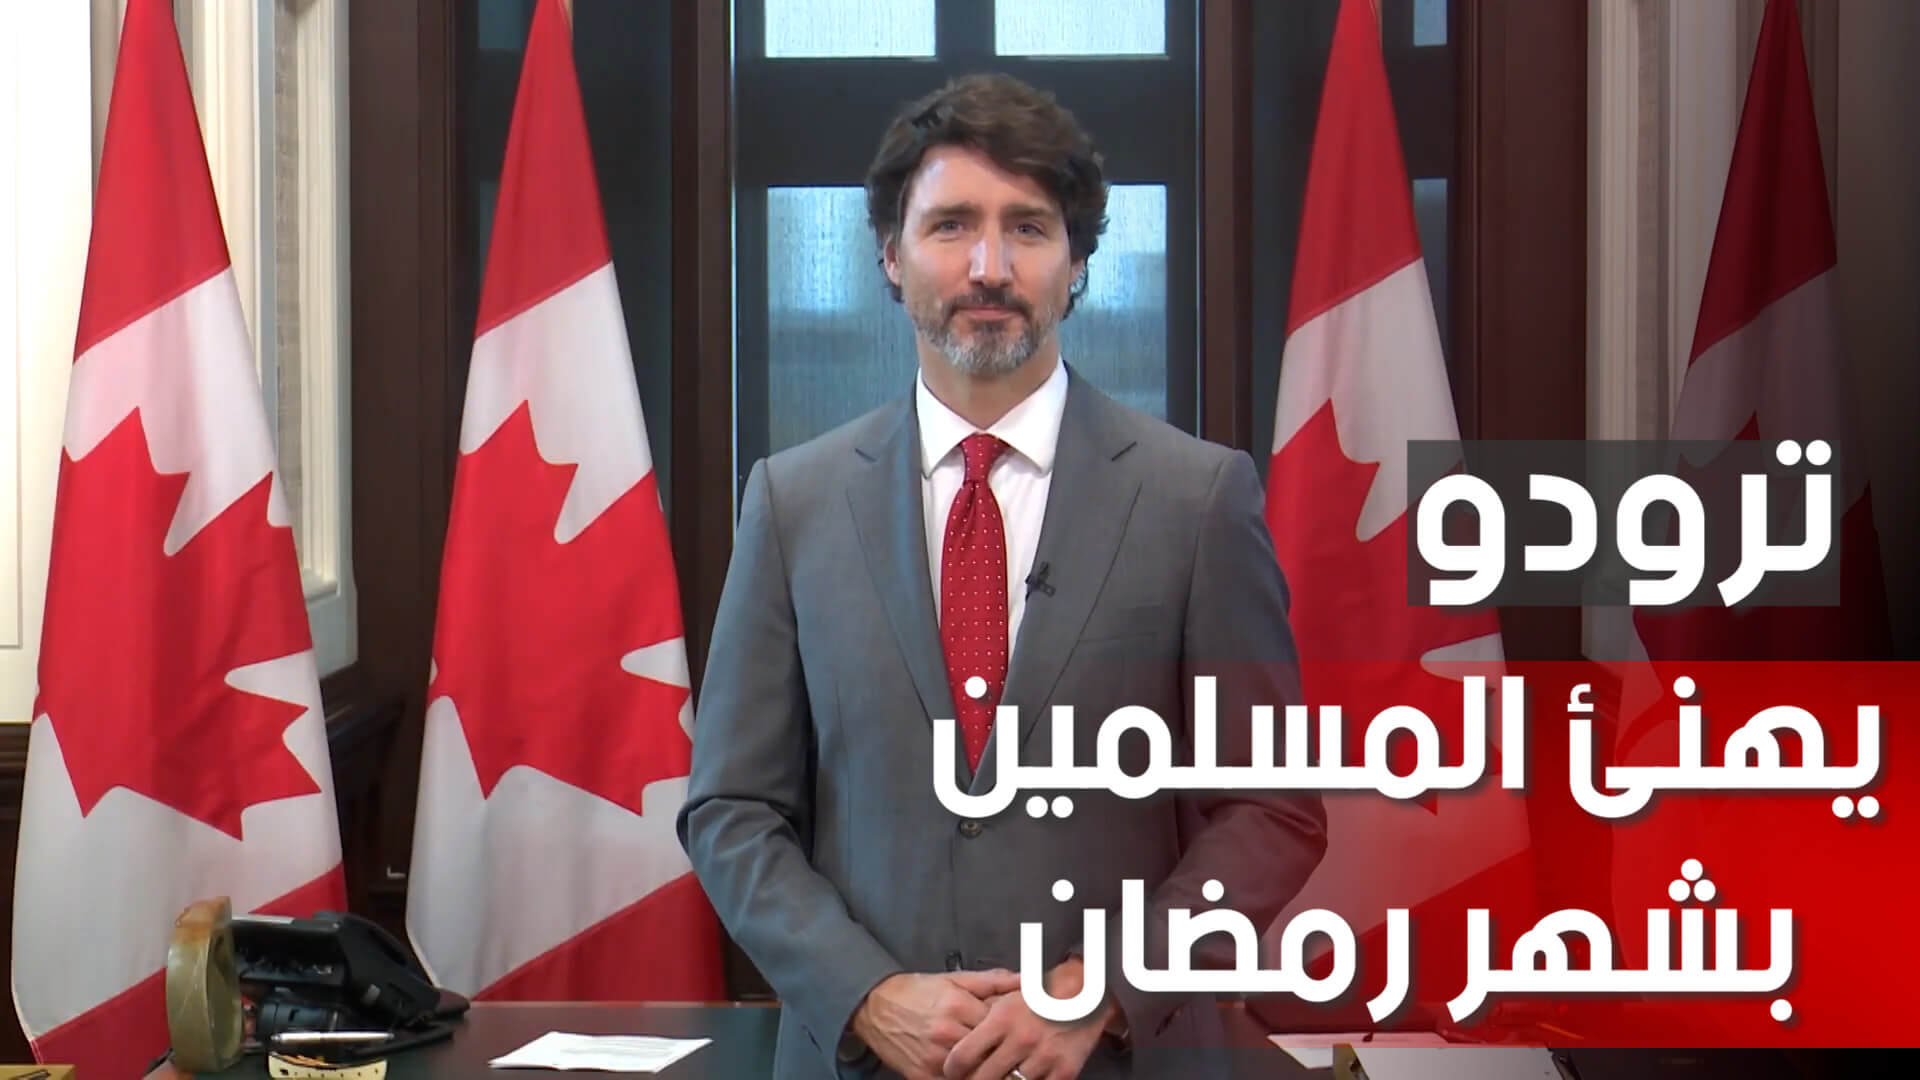 فيديو : جاستن ترودو يهنئ المسلمين في كندا والعالم بمناسبة شهر رمضان المبارك